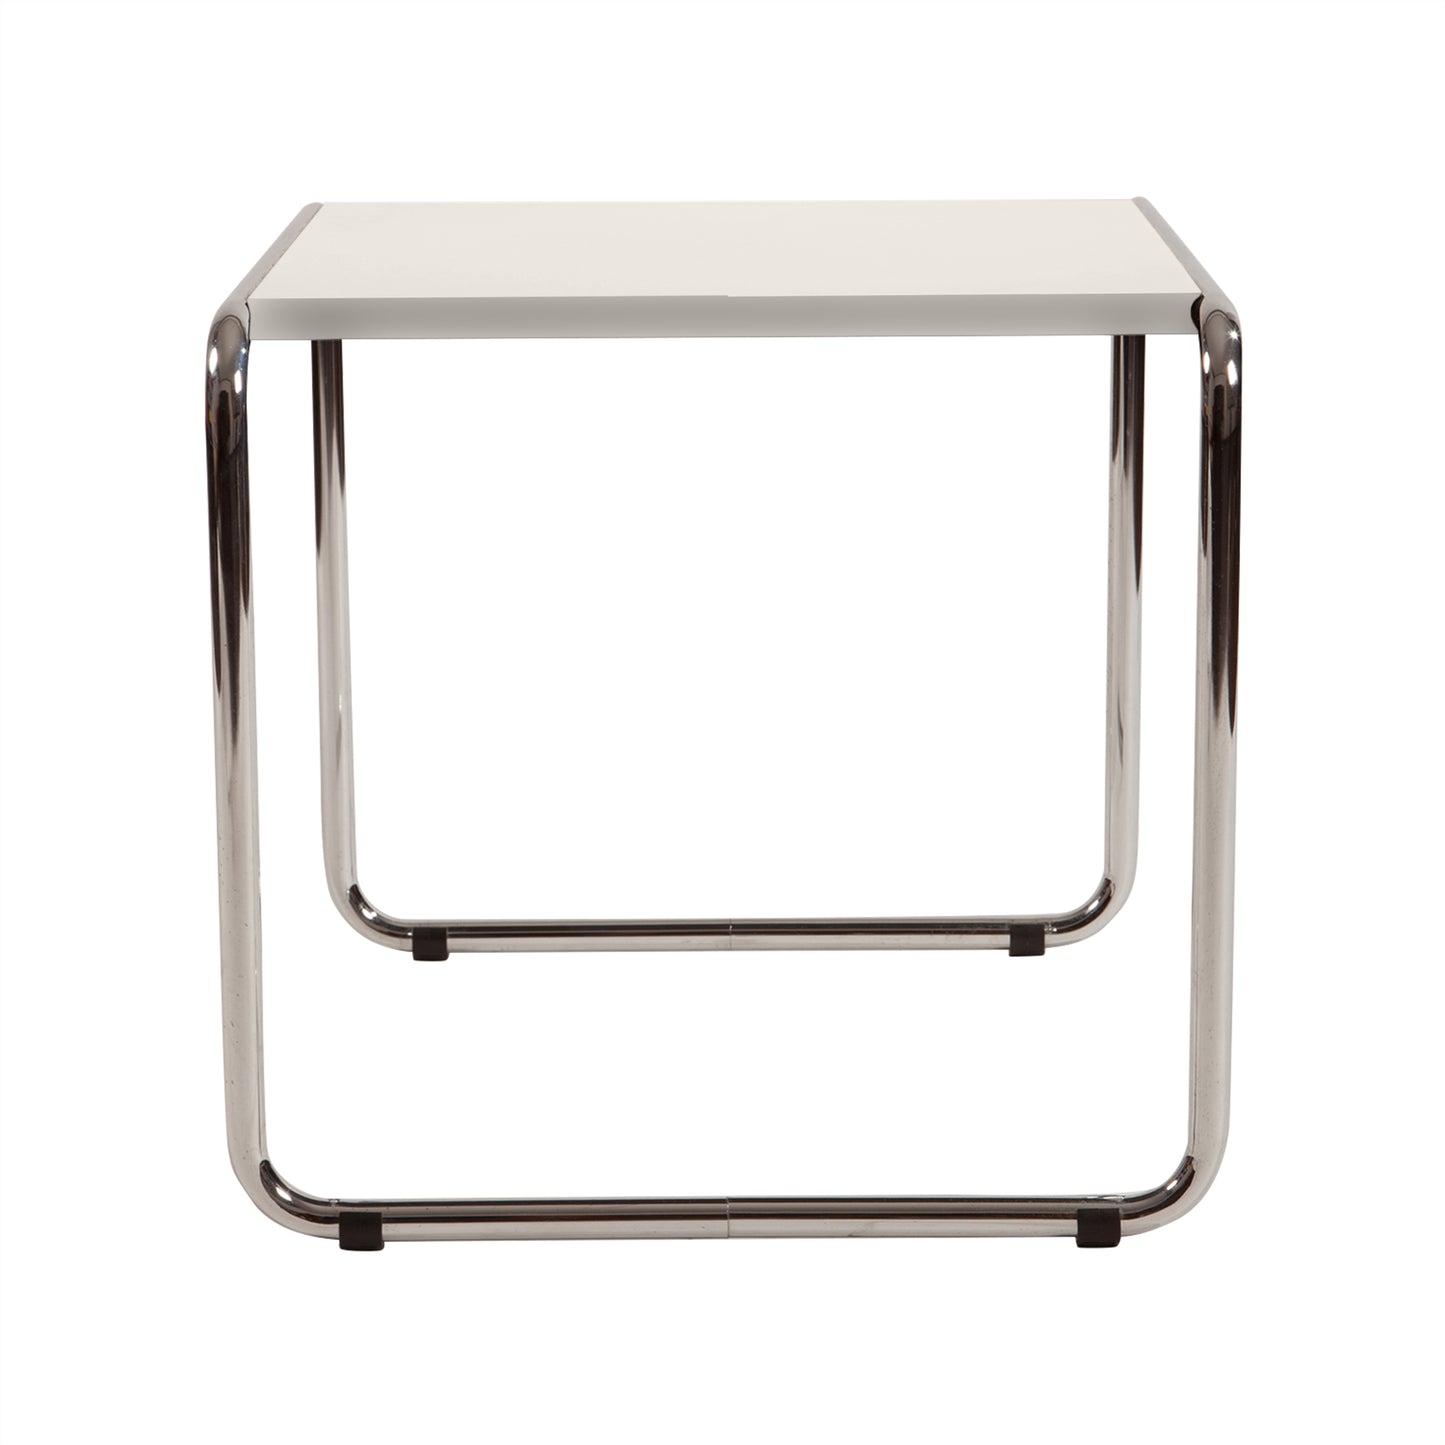 Laccio table style | White | Front